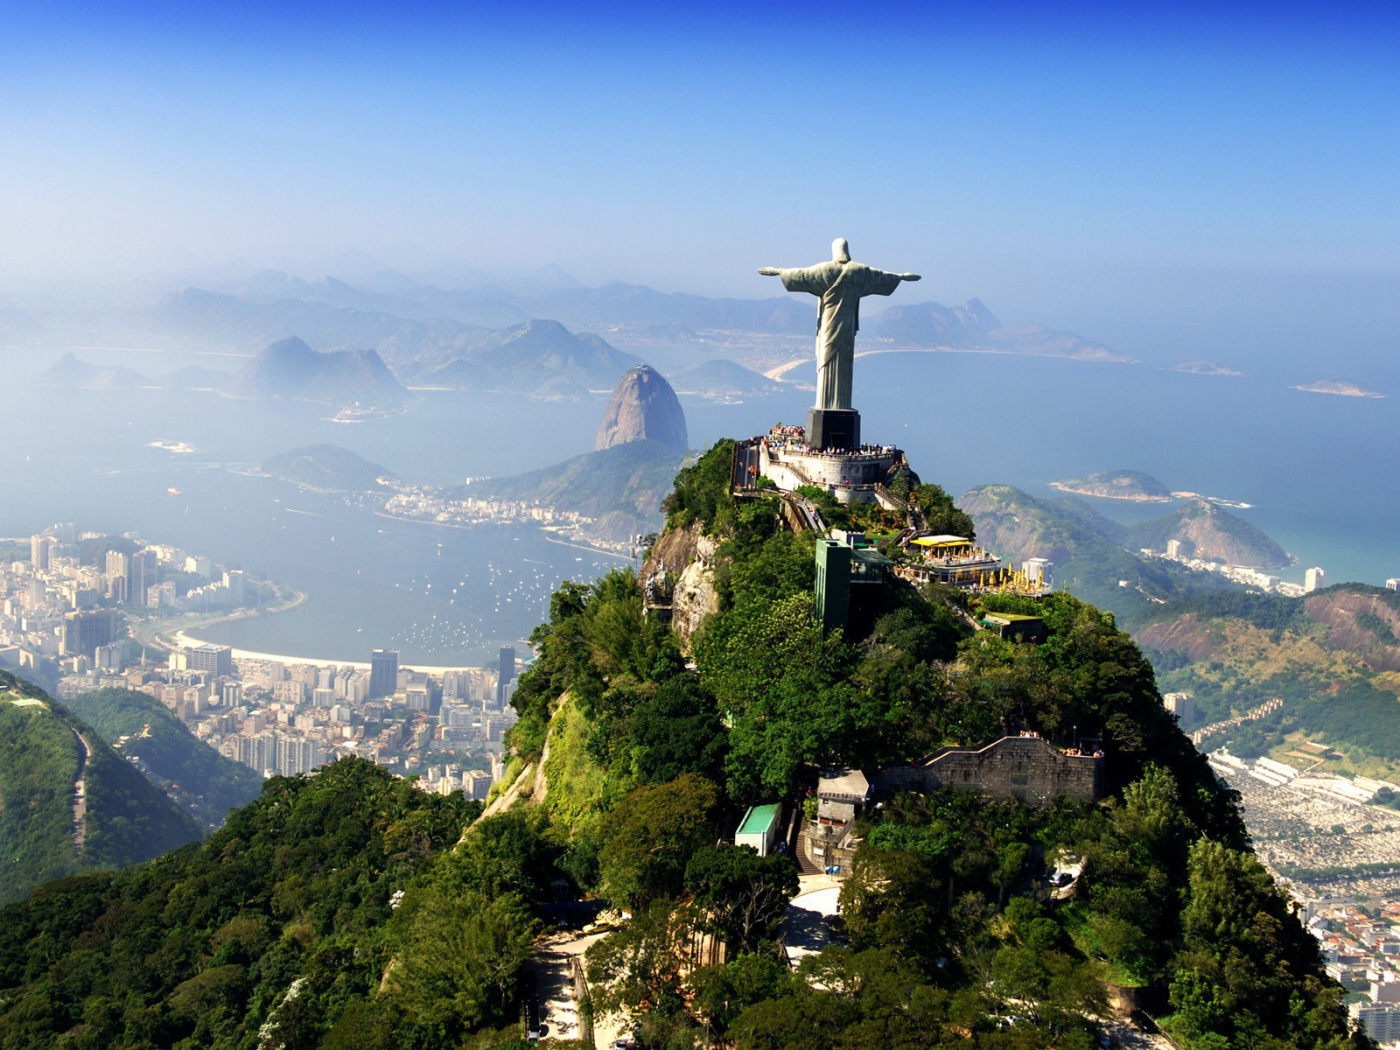 Статуя в Бразилии